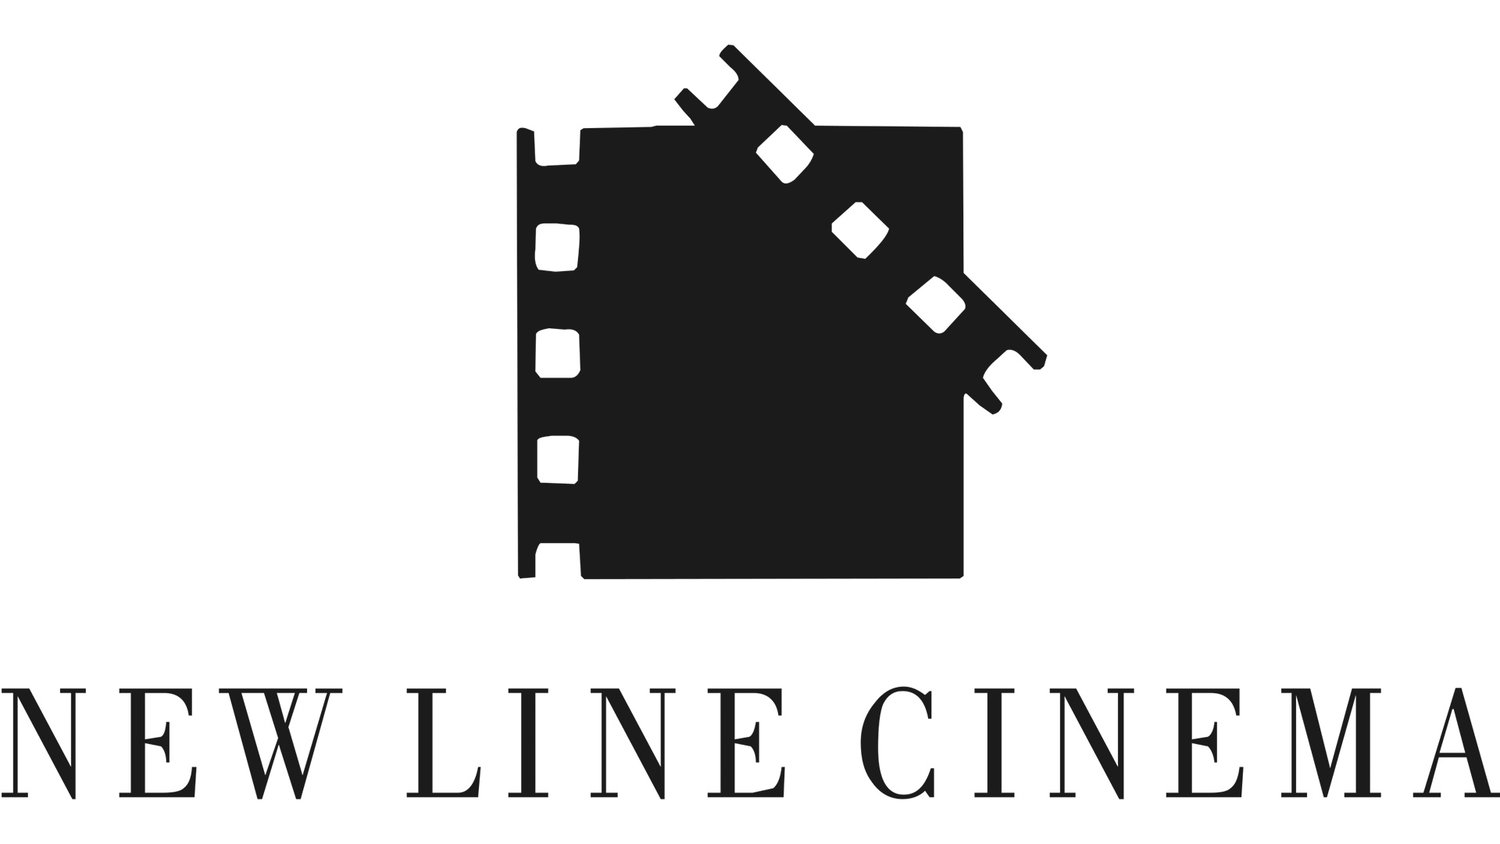 Лайн синема. Нью лайн Синема. New line Cinema логотип. Логотипы киностудий. Логотипы известных кинокомпаний.